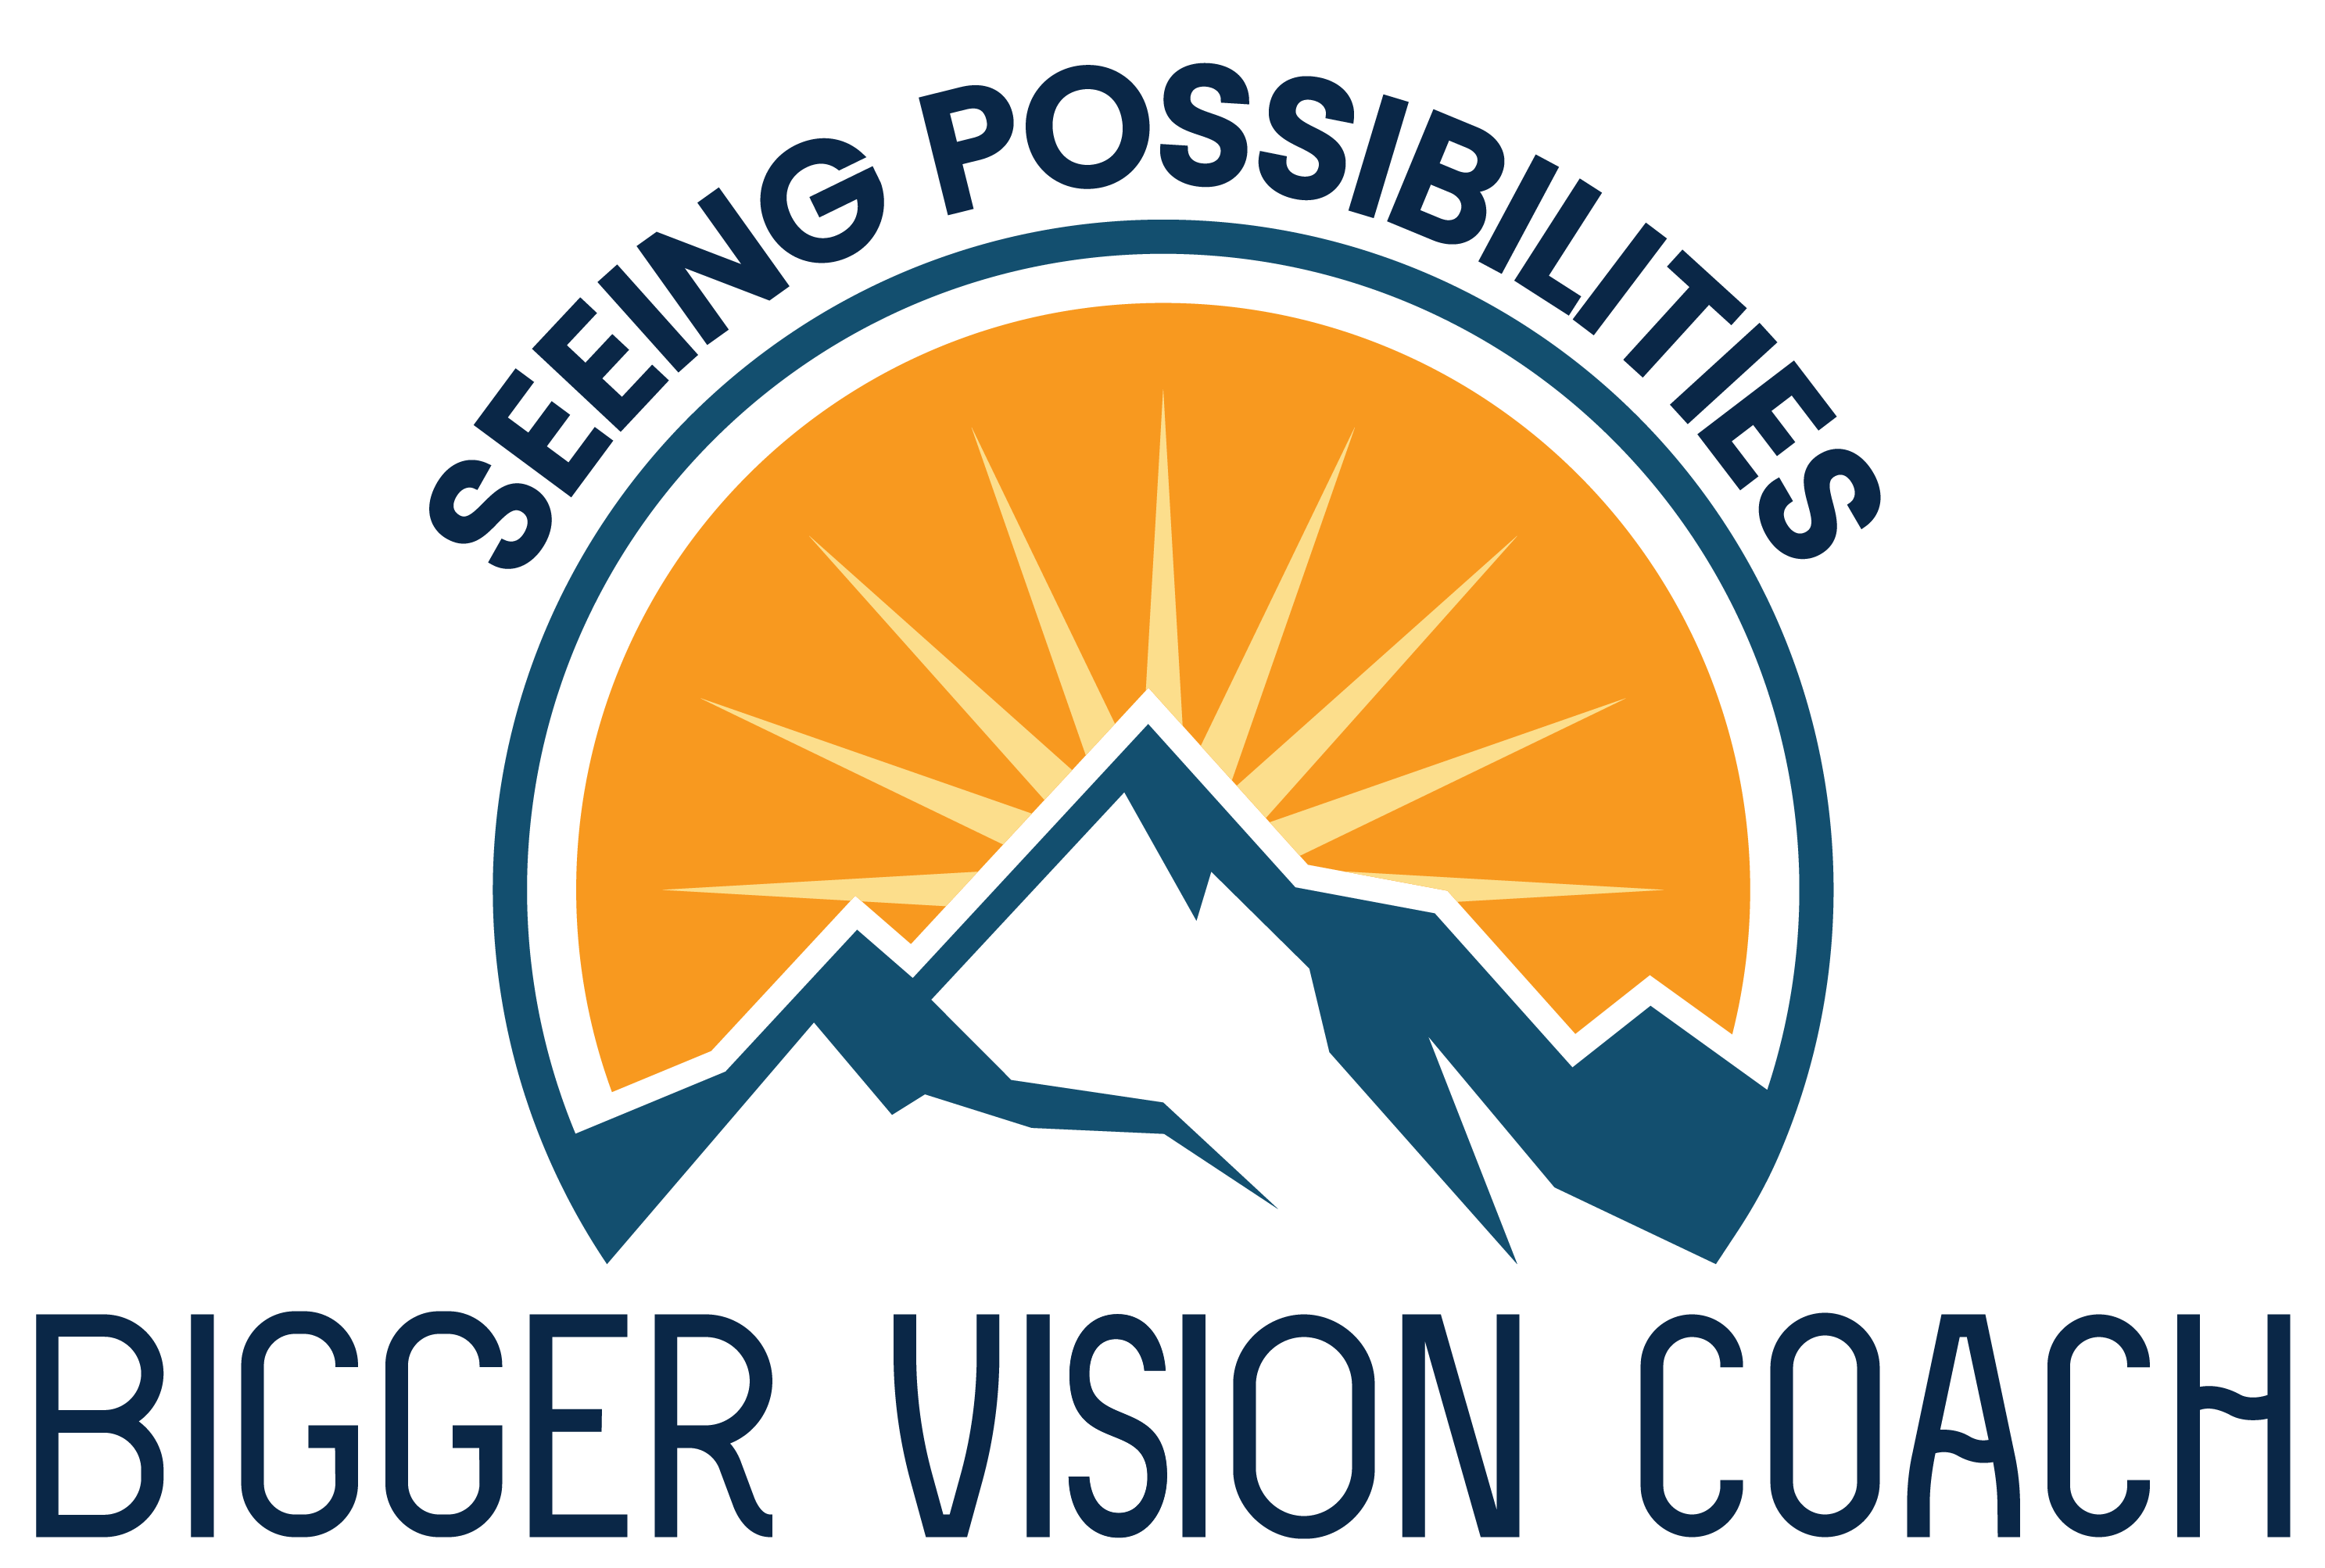 Bigger Vision Coach, LLC